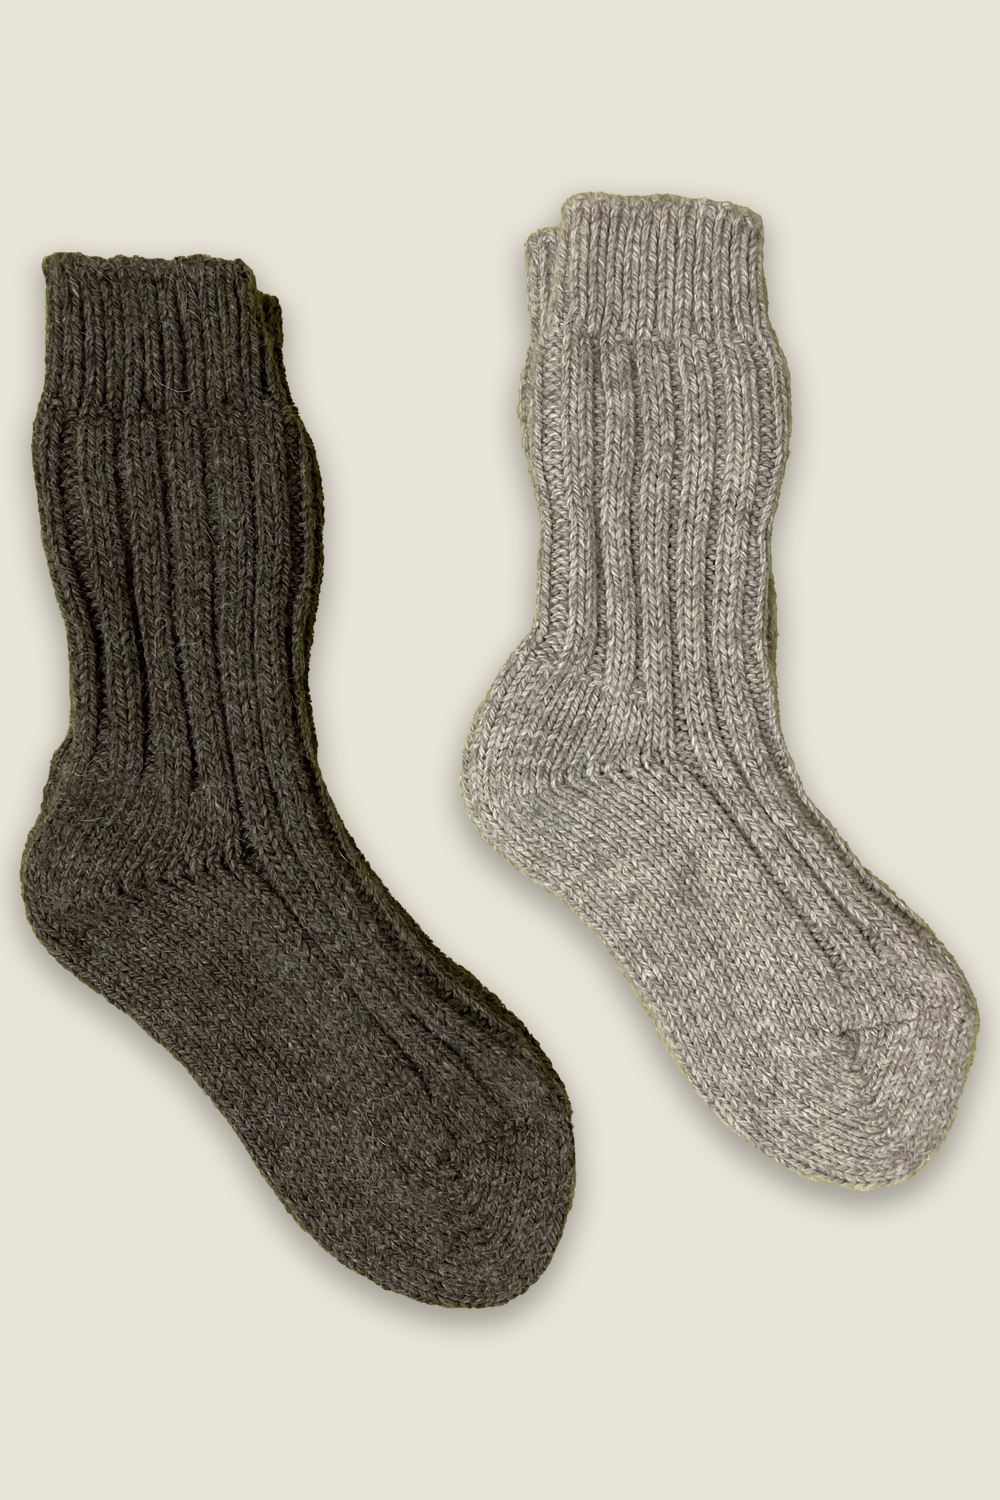 Chaussettes en alpaga - gris et marron - 2 paires